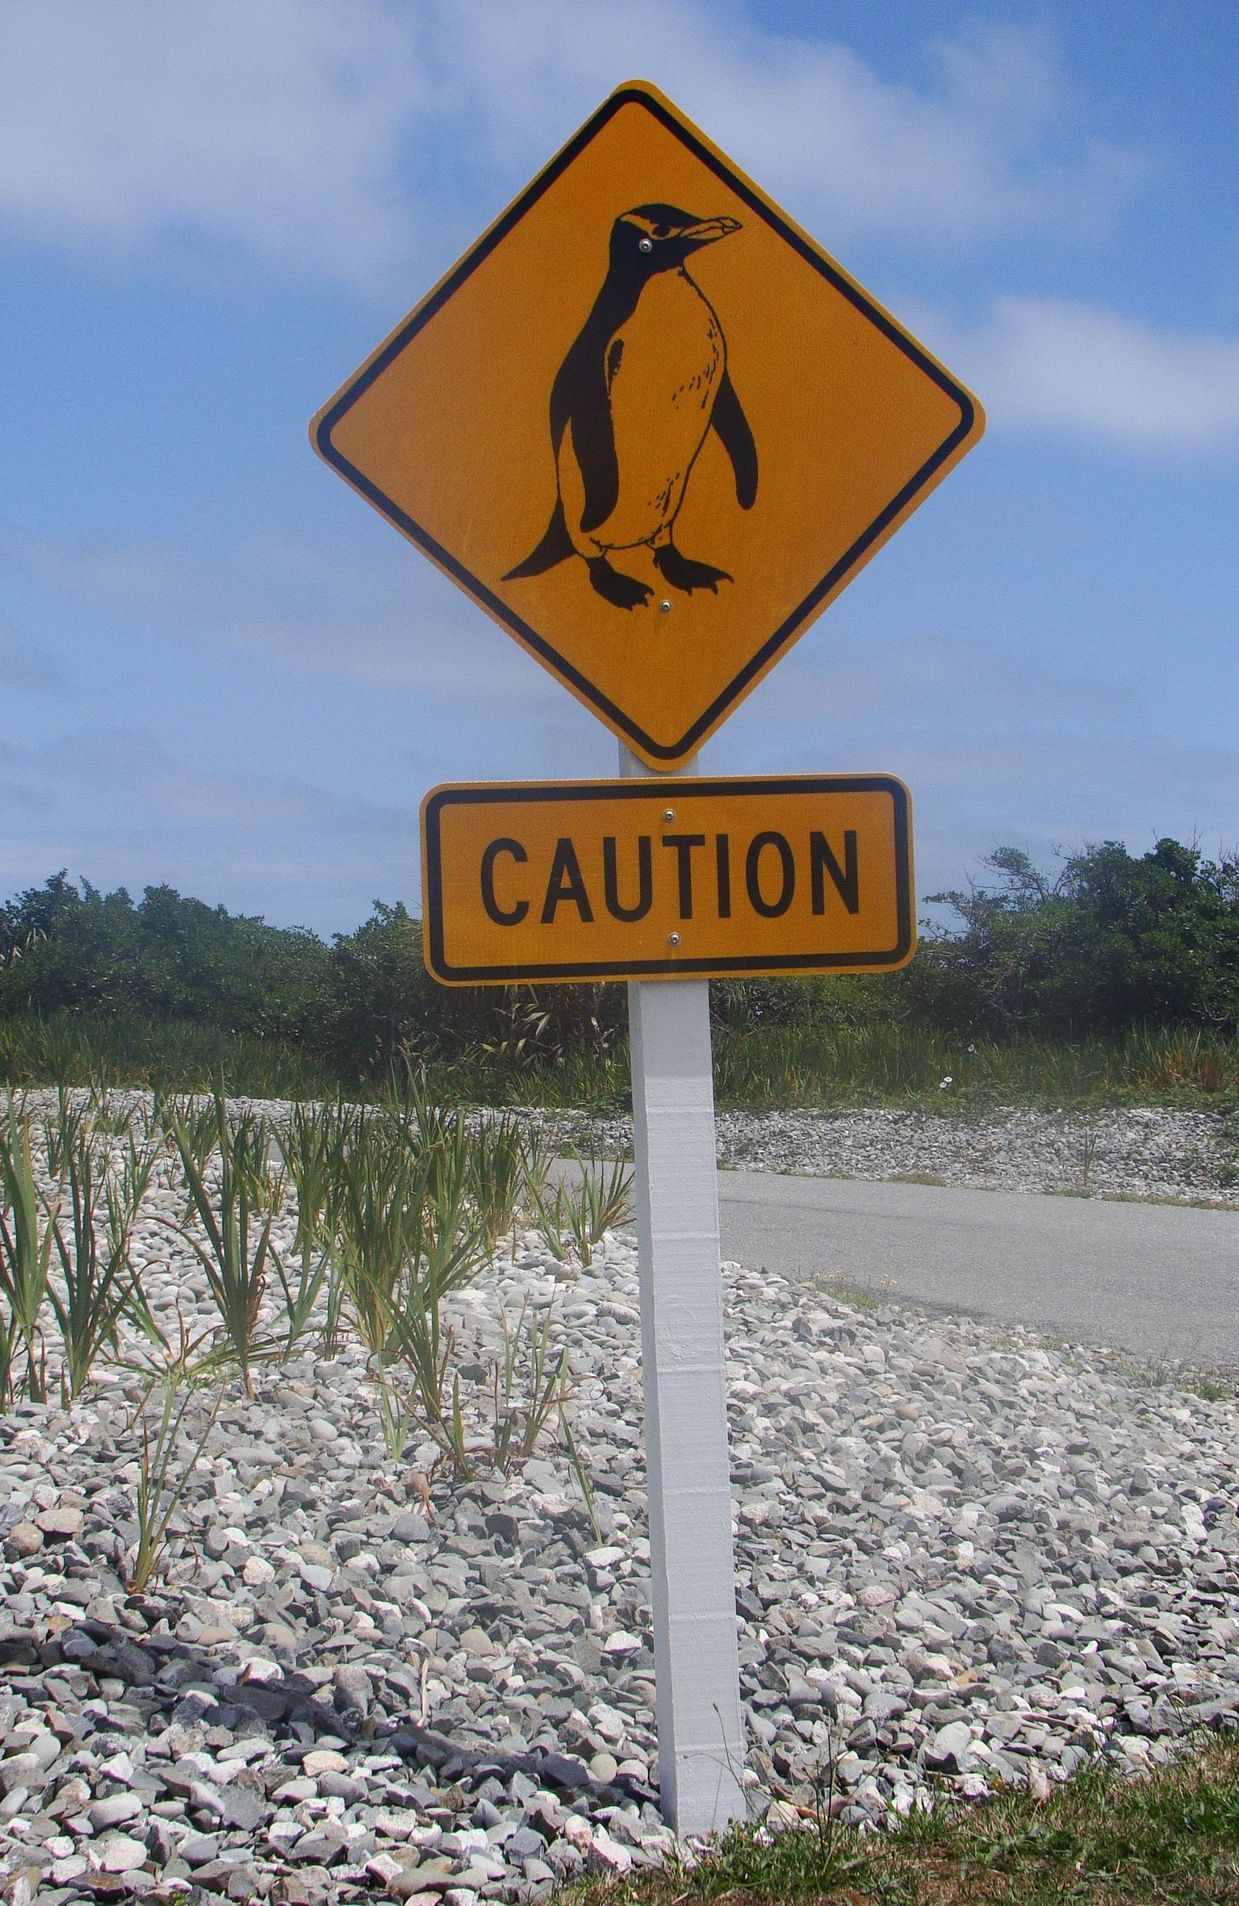 Un panneau indique que des pingouins pourraient traverser la chaussée